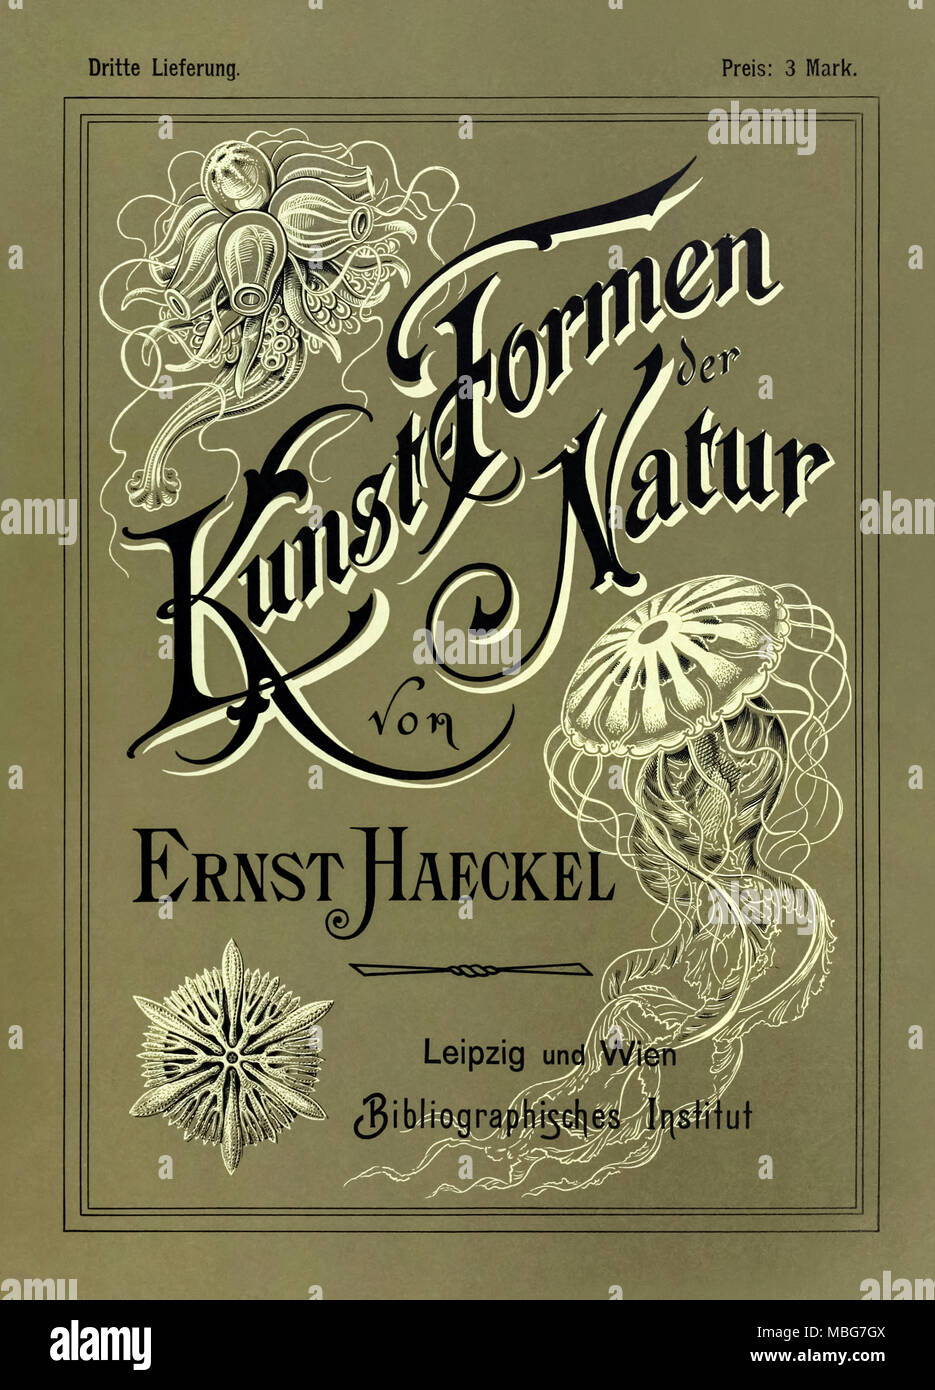 'Kunstformen der Natur' (formes d'art dans la nature) de couverture du troisième édition illustrée par Ernst Haeckel (1834-1919), lithographie de Adolf Giltsch (1852-1911) et publié par Bibliographisches Institut entre 1899 et 1904. Voir plus d'informations ci-dessous. Banque D'Images